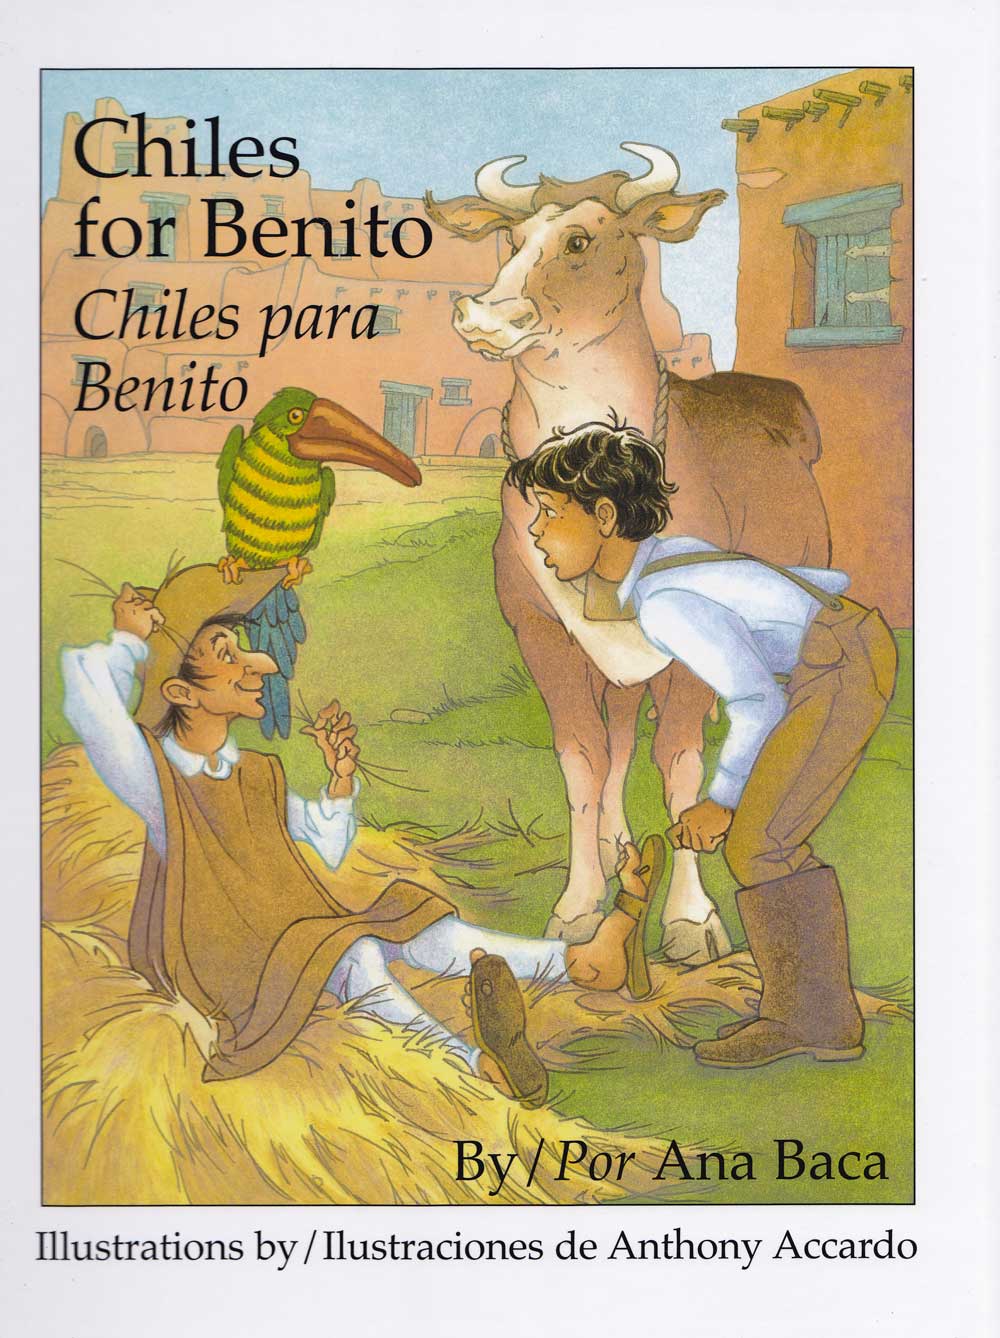 Chiles para Benito - Chiles for Benito, Del Sol Books